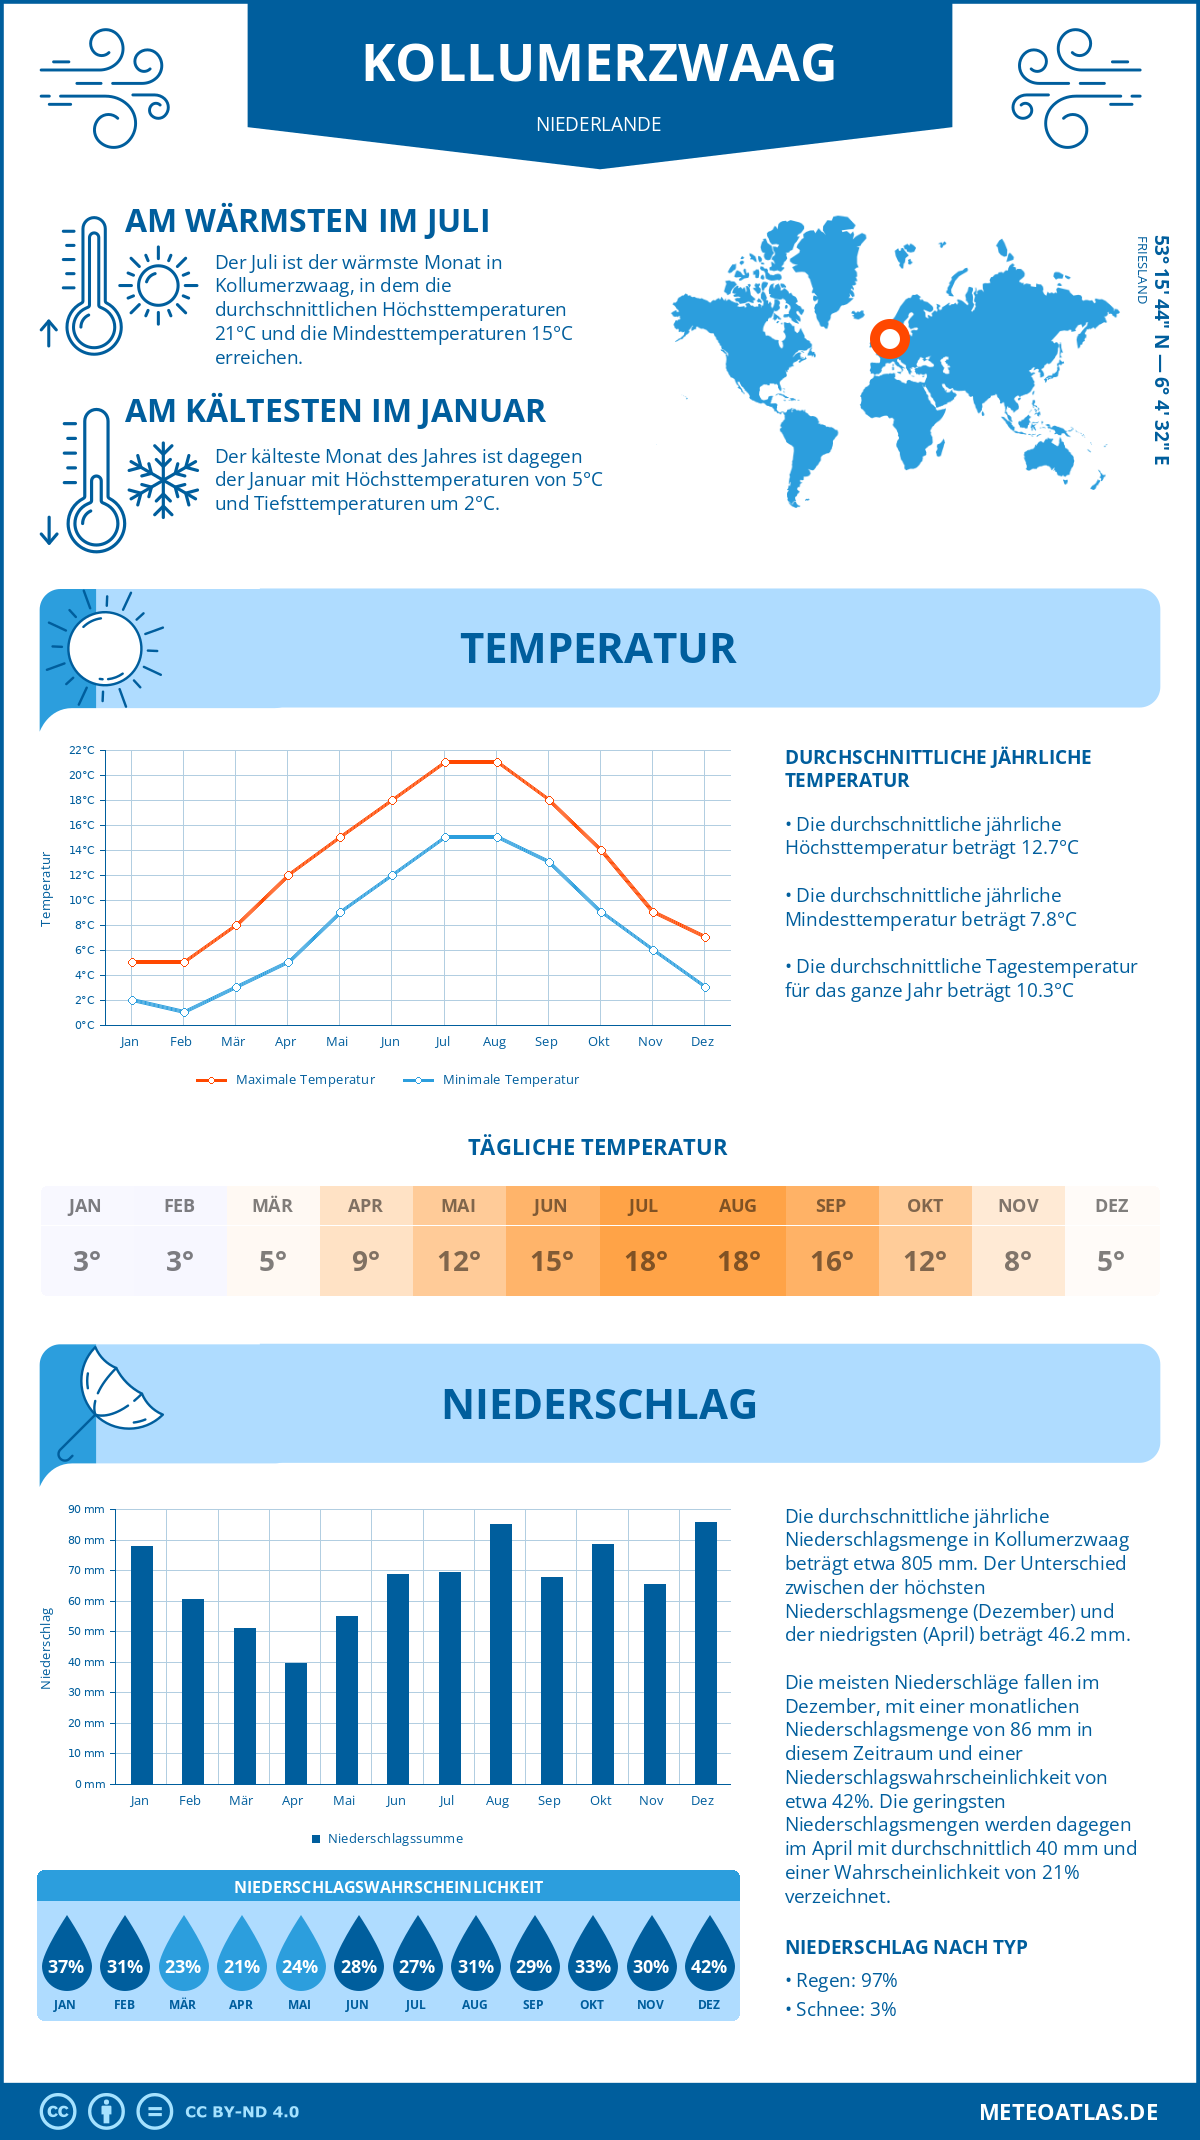 Wetter Kollumerzwaag (Niederlande) - Temperatur und Niederschlag